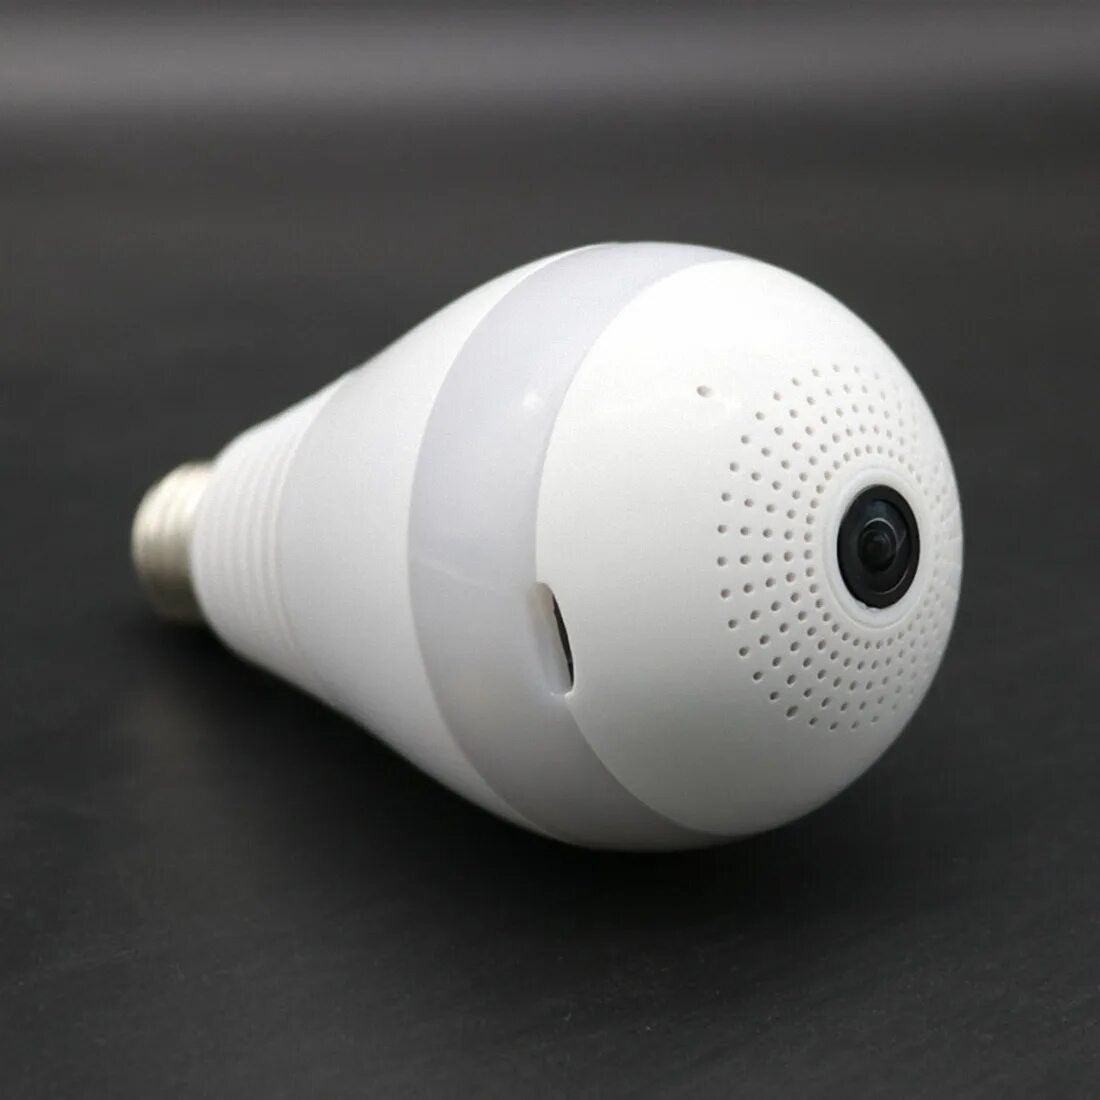 Беспроводная IP-камера лампочка v9. 1r110621 камера видеонаблюдения лампочка 200 градусов WIFI. Видеокамера в лампочке. Лампа с видеокамерой. Лампочка камера купить